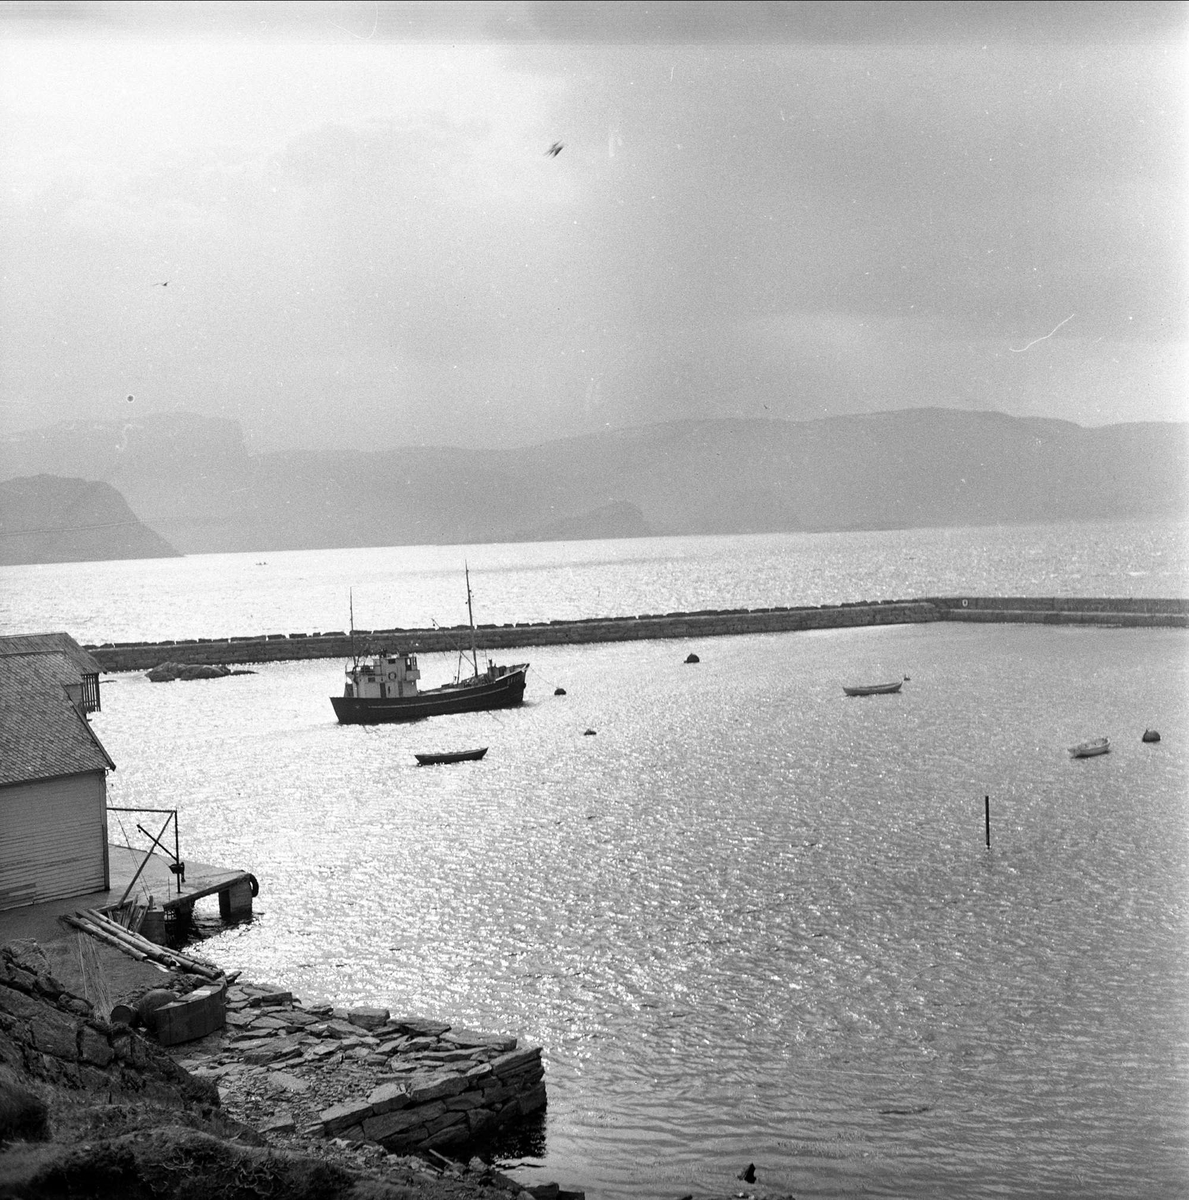 Øya Silda med hus båter og molo. Vågsøy mars 1963.